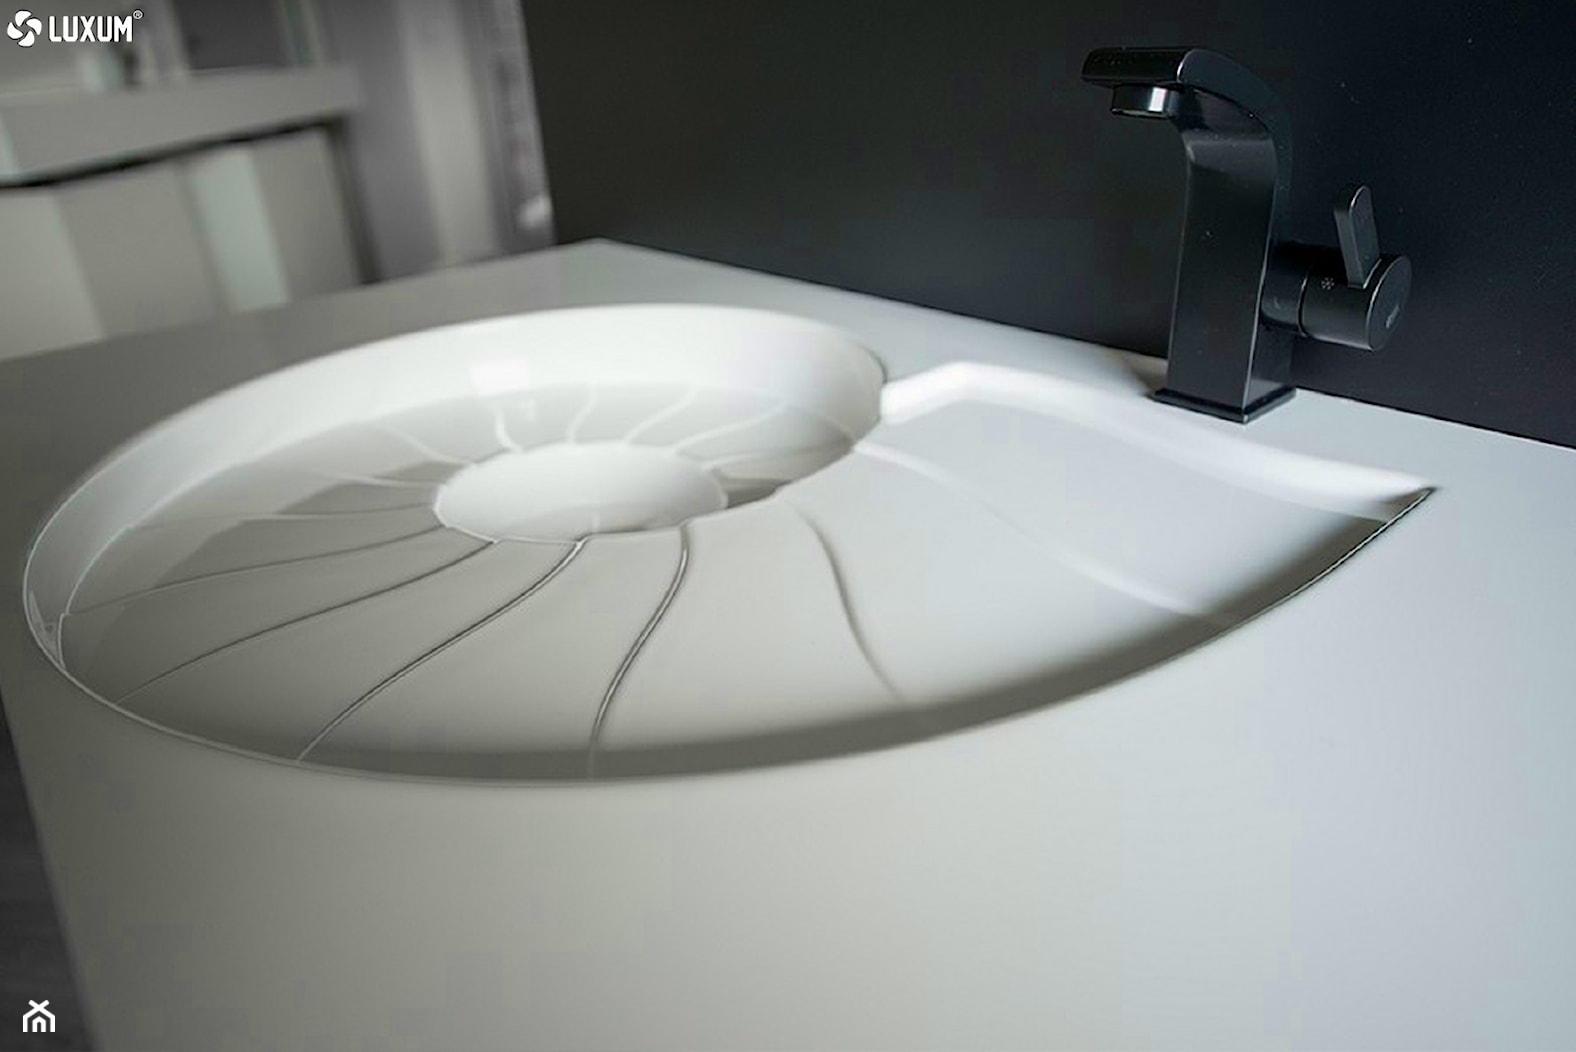 Designerska umywalka w kształcie amonitu. - Łazienka, styl nowoczesny - zdjęcie od Luxum - Homebook